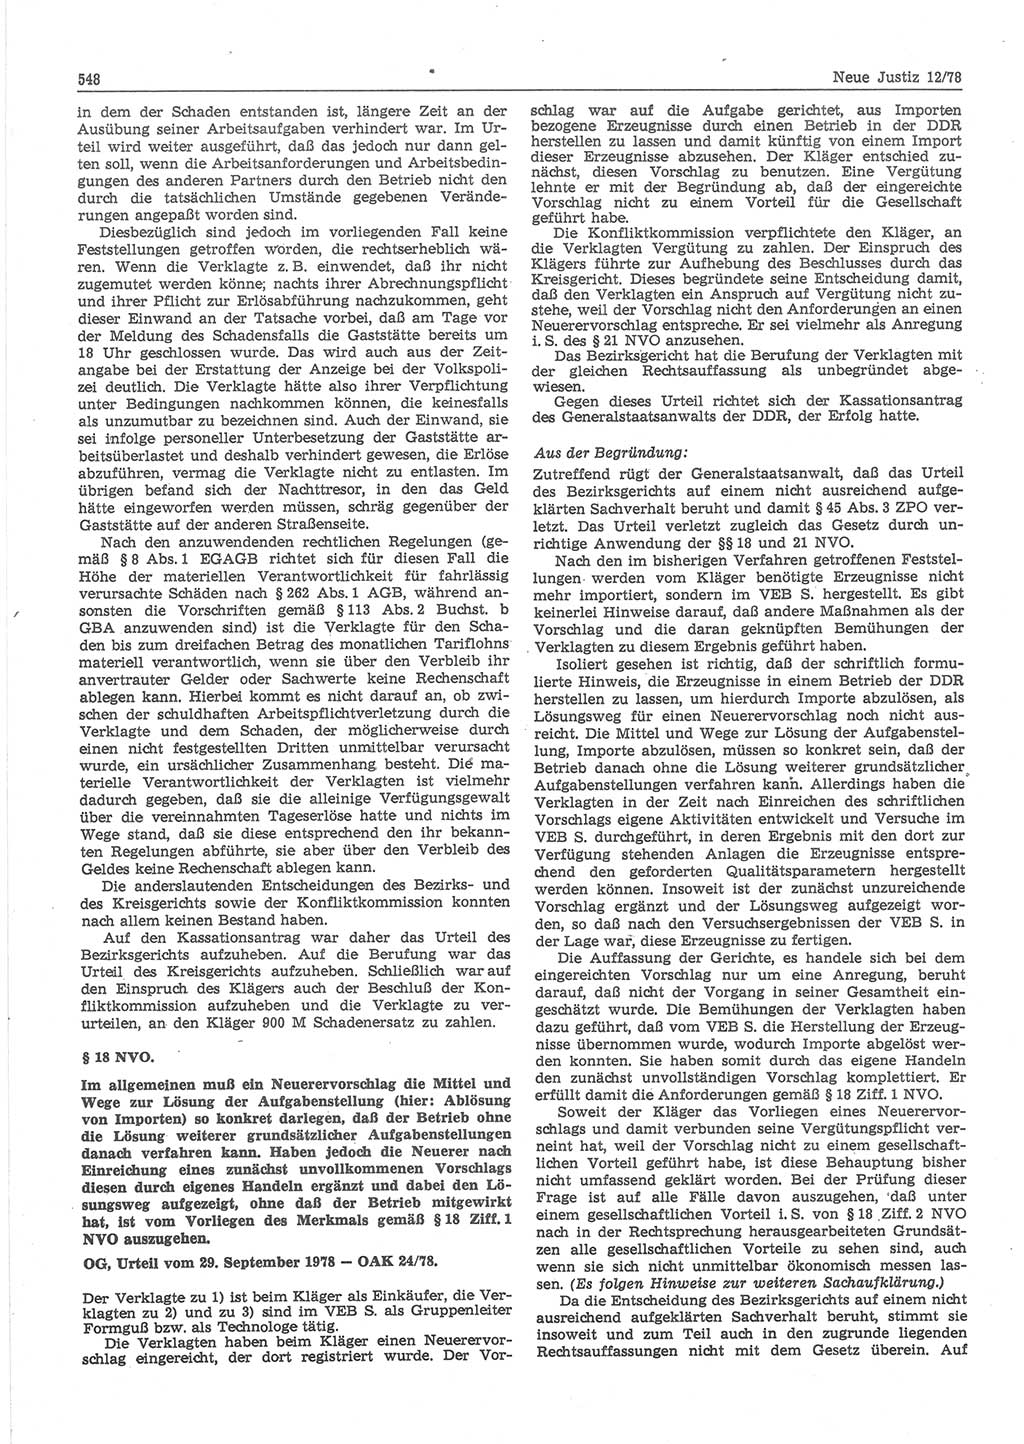 Neue Justiz (NJ), Zeitschrift für sozialistisches Recht und Gesetzlichkeit [Deutsche Demokratische Republik (DDR)], 32. Jahrgang 1978, Seite 548 (NJ DDR 1978, S. 548)